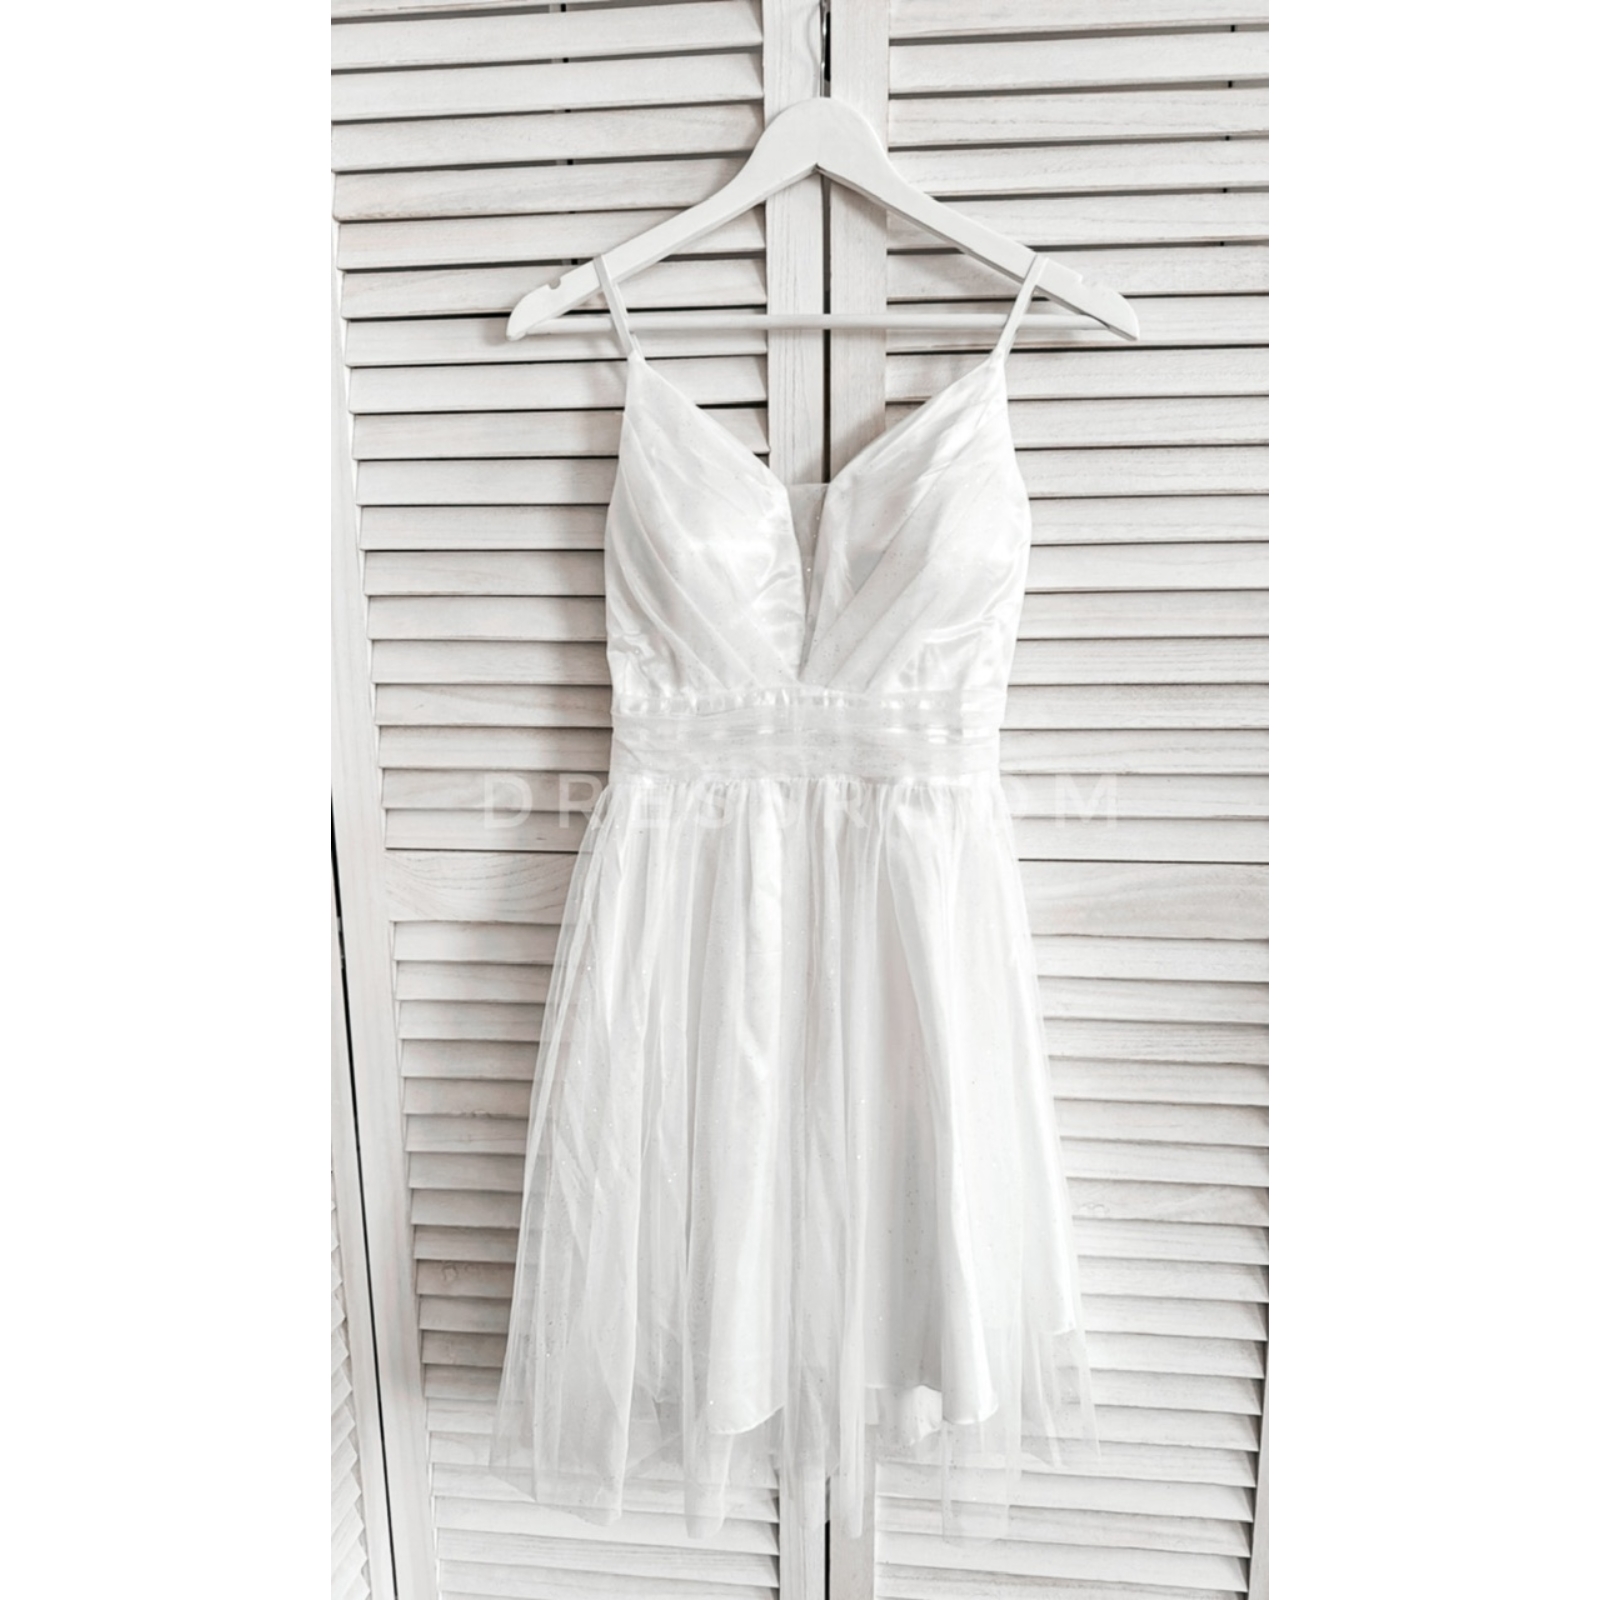 Kép 1/3 - LUXORY csillámos ruha - Fehér -Menyecske ruha